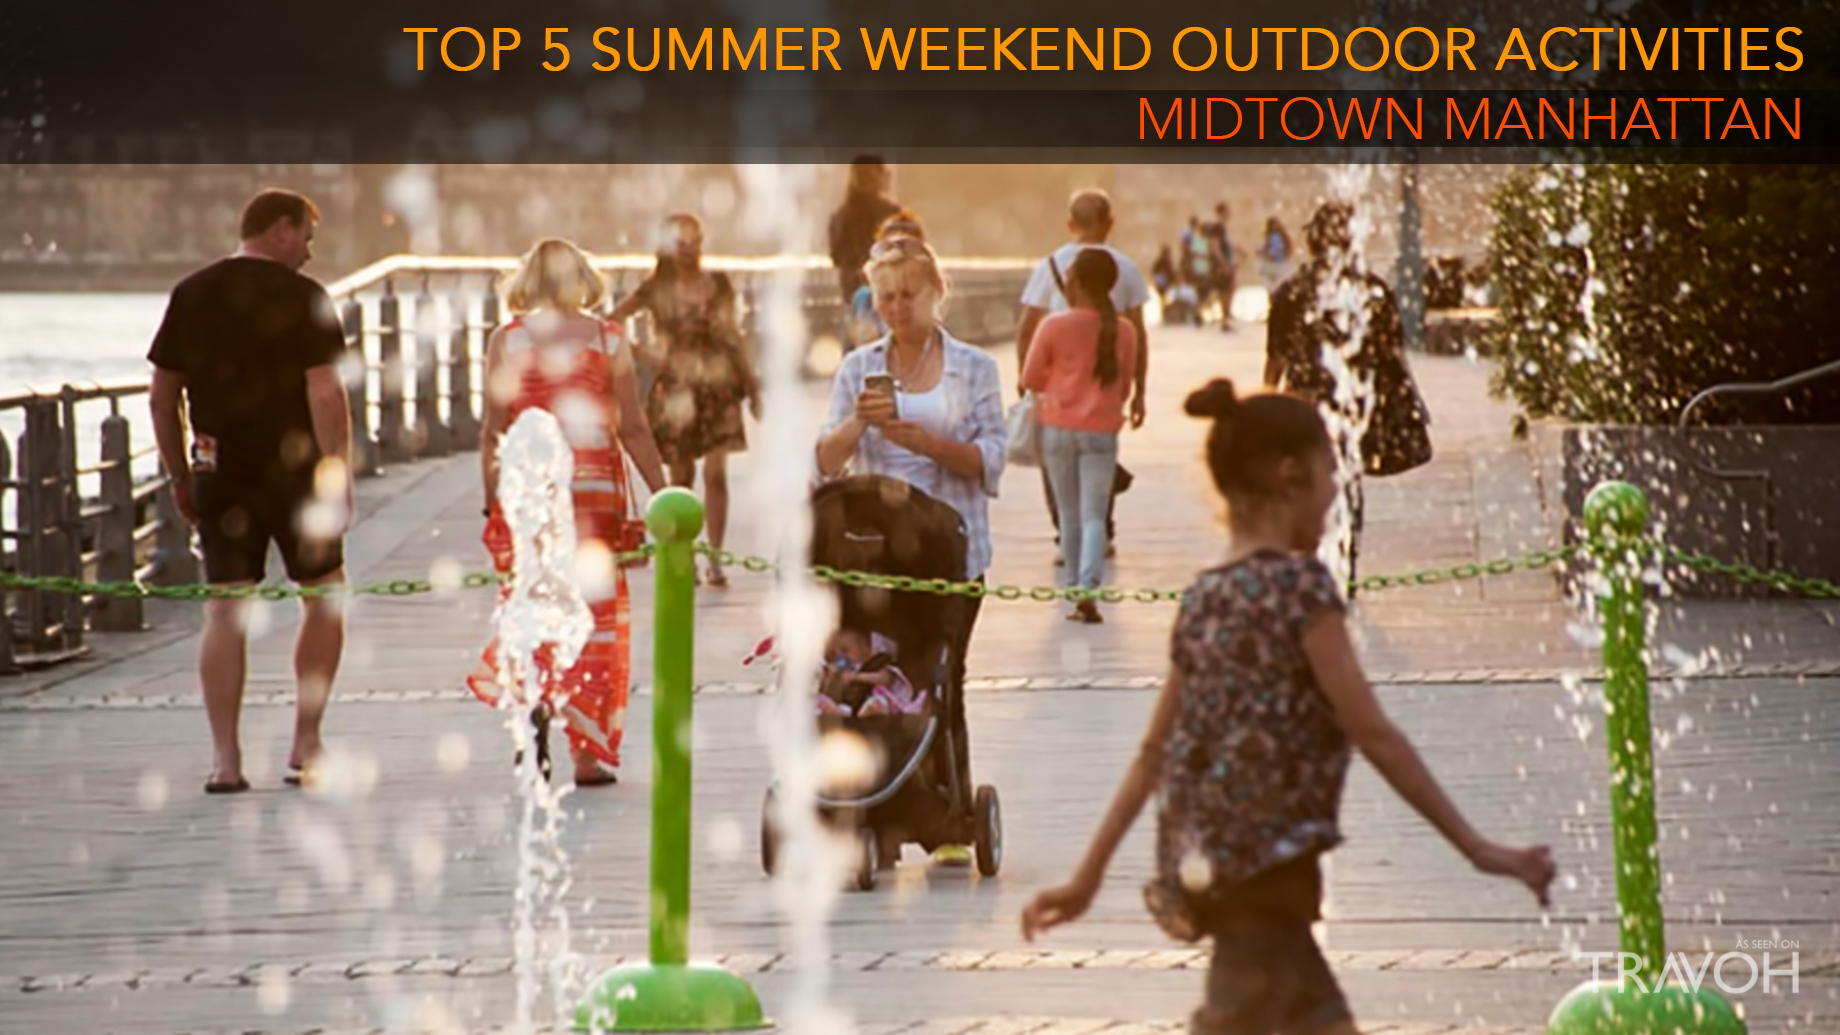 Top 5 Summer Weekend Outdoor Activities in Midtown Manhattan